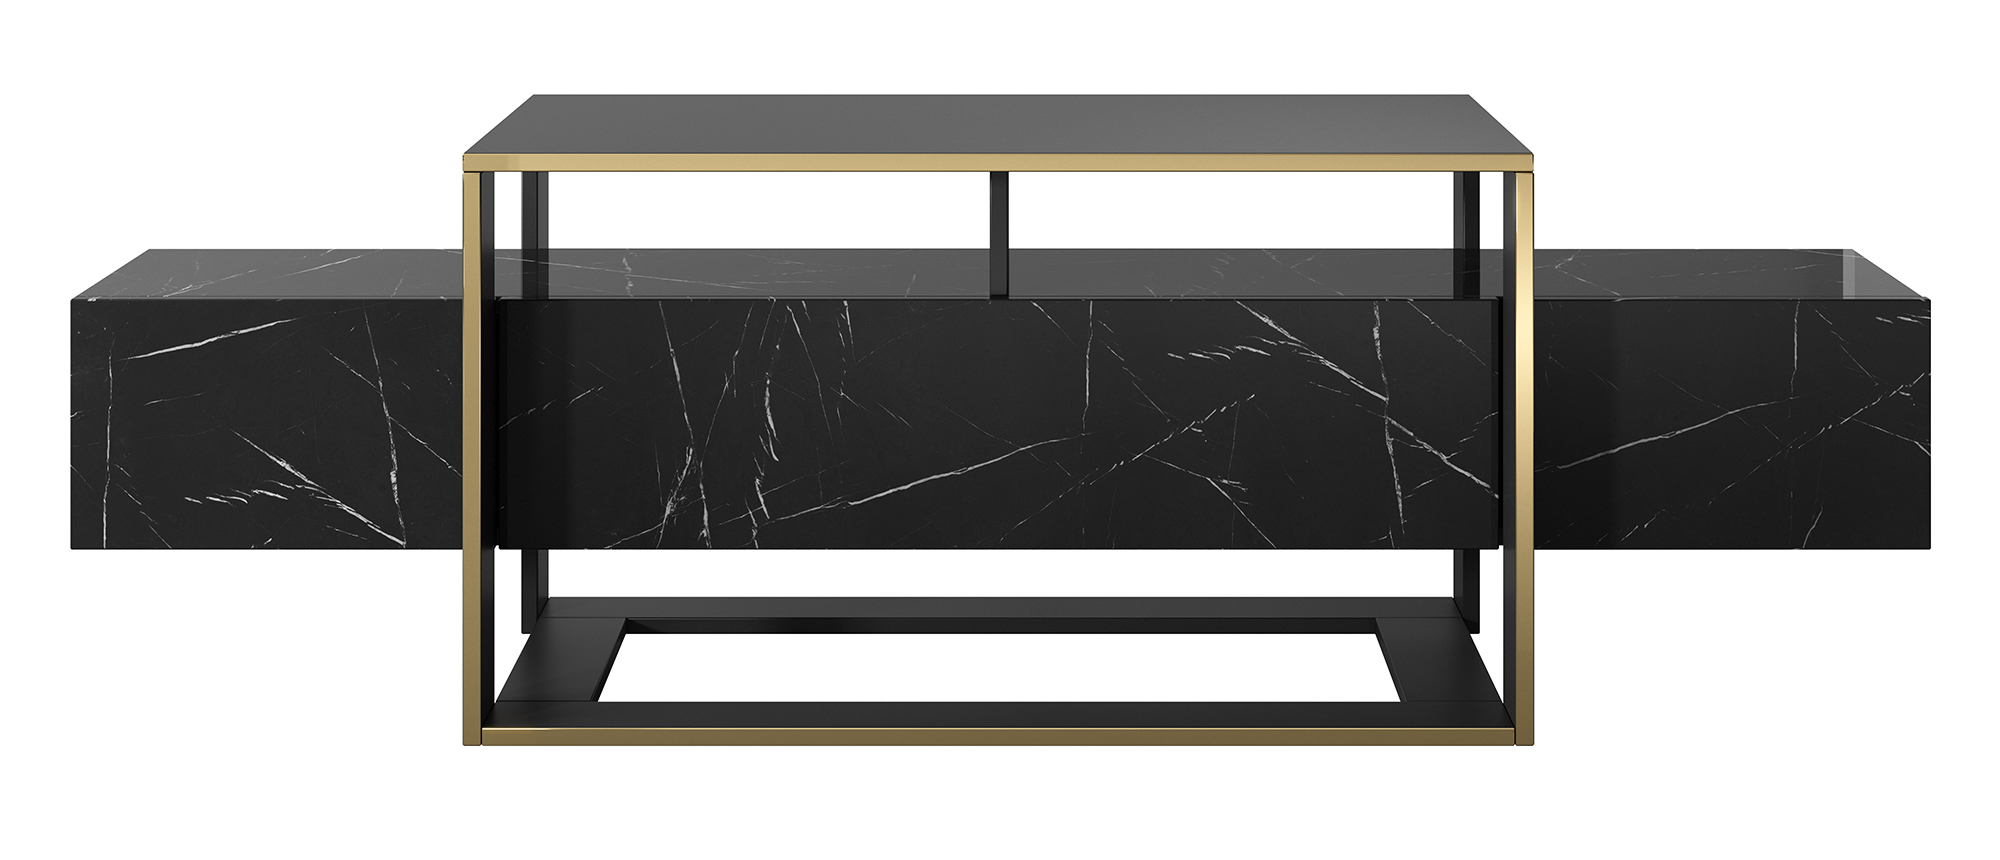 Meuble TV Excelsum 160 cm en marbre noir avec étagère verrouillable